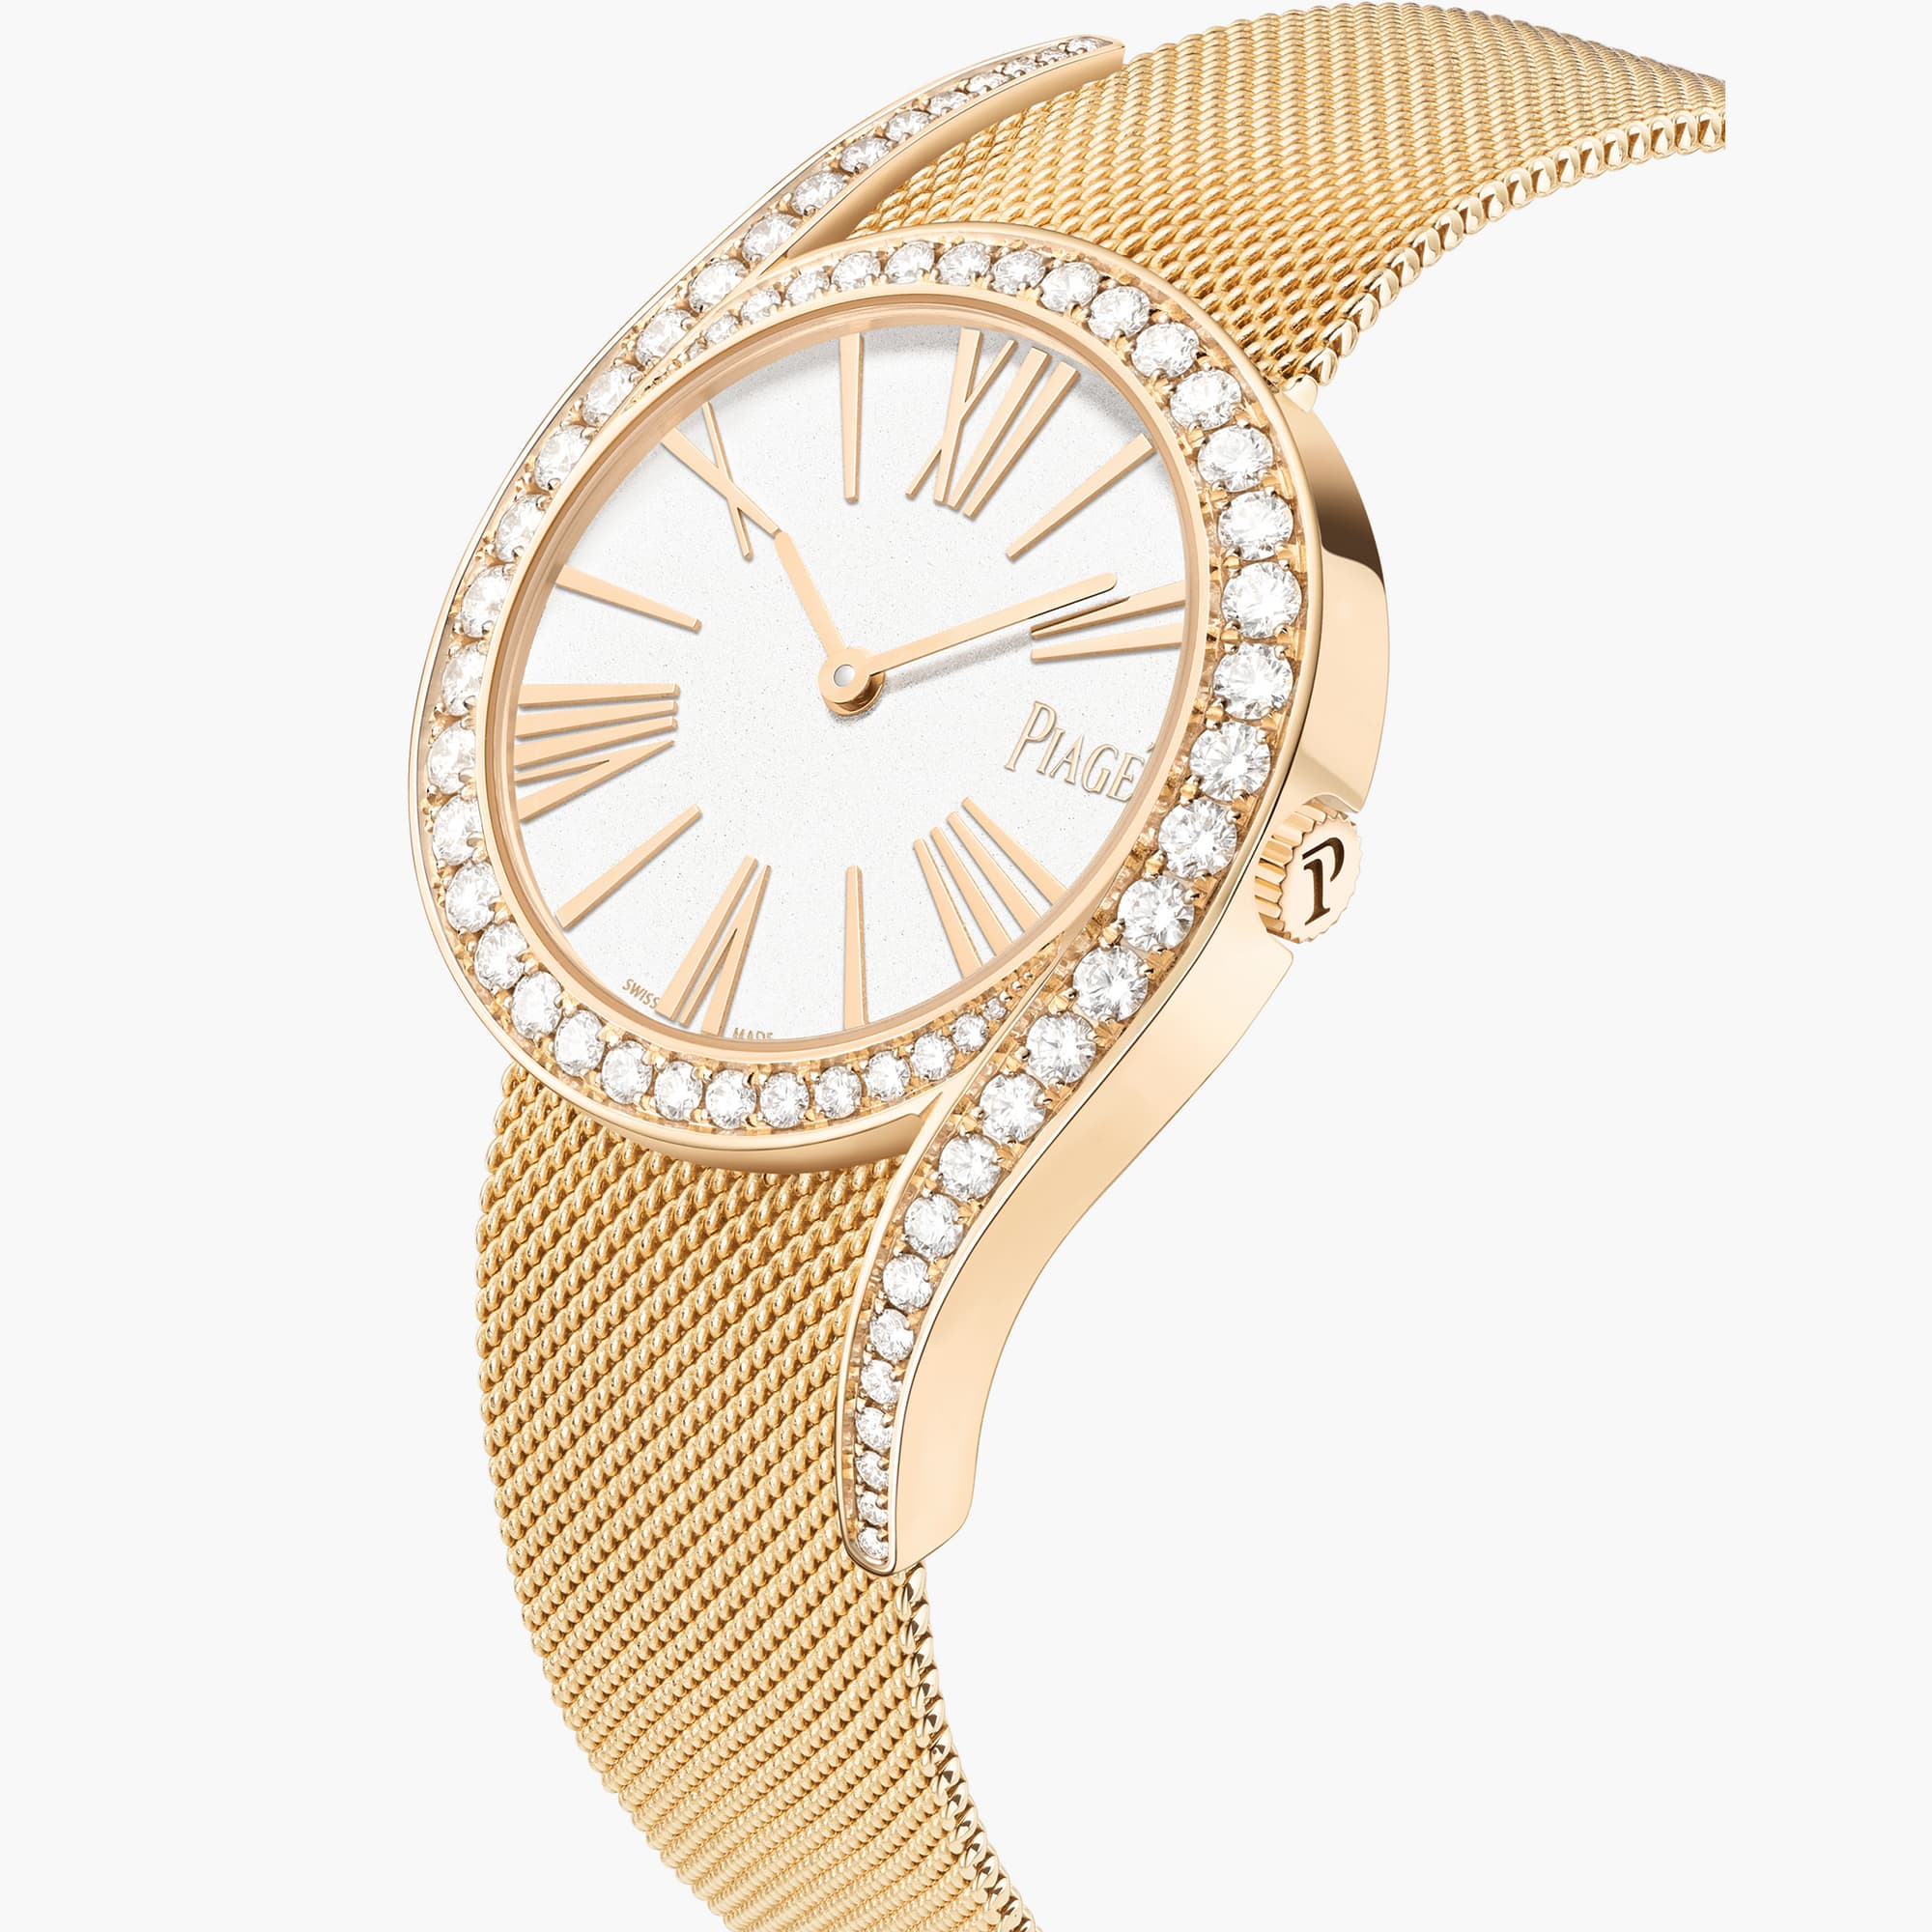 Automatic Rose Gold Diamond Watch - Piaget Women Luxury Watch G0A45213